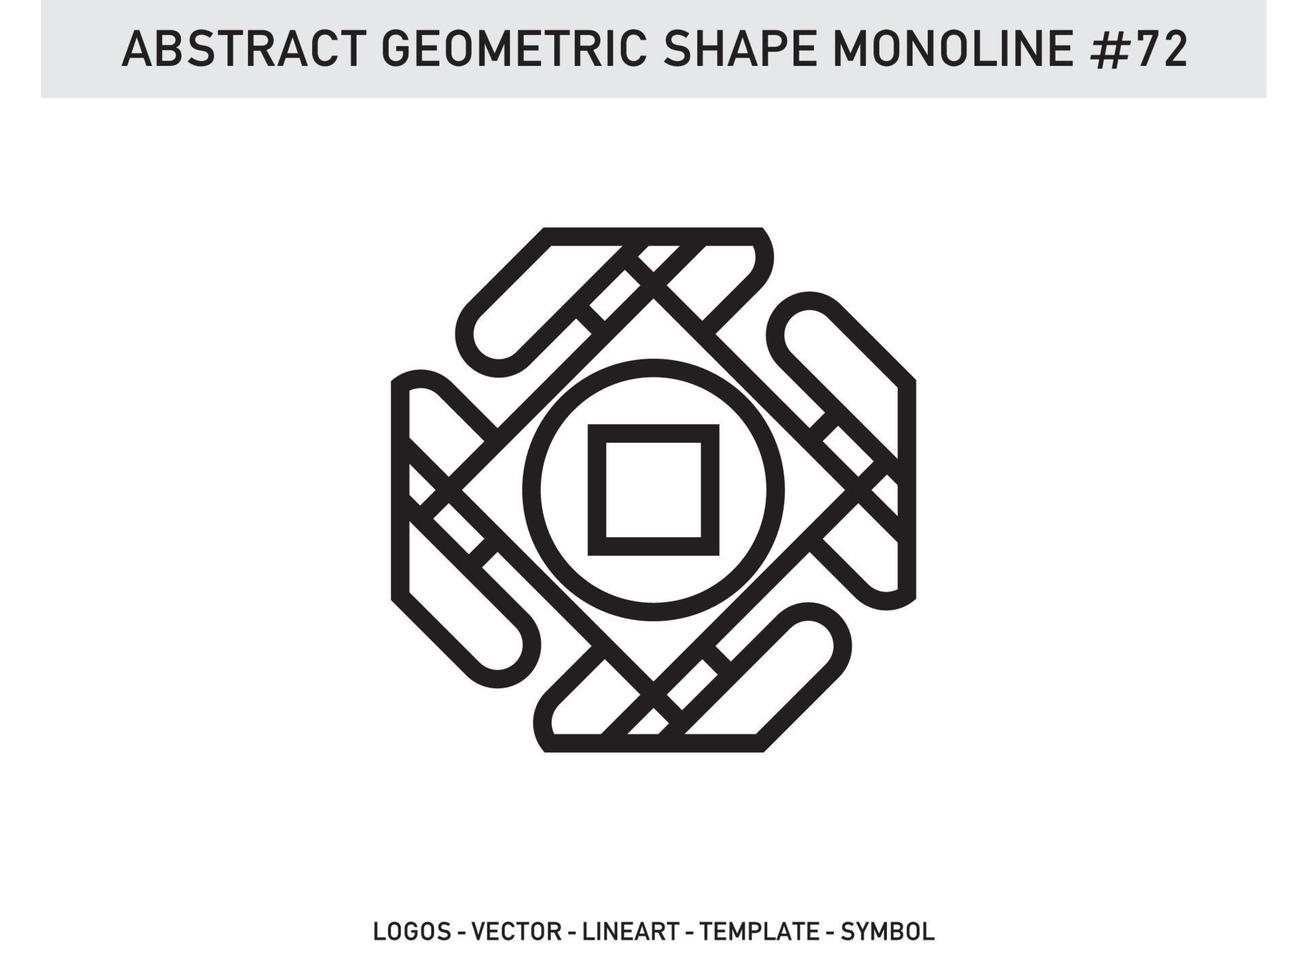 forma di vettore di linea lineart monolinea geometrica astratta libera